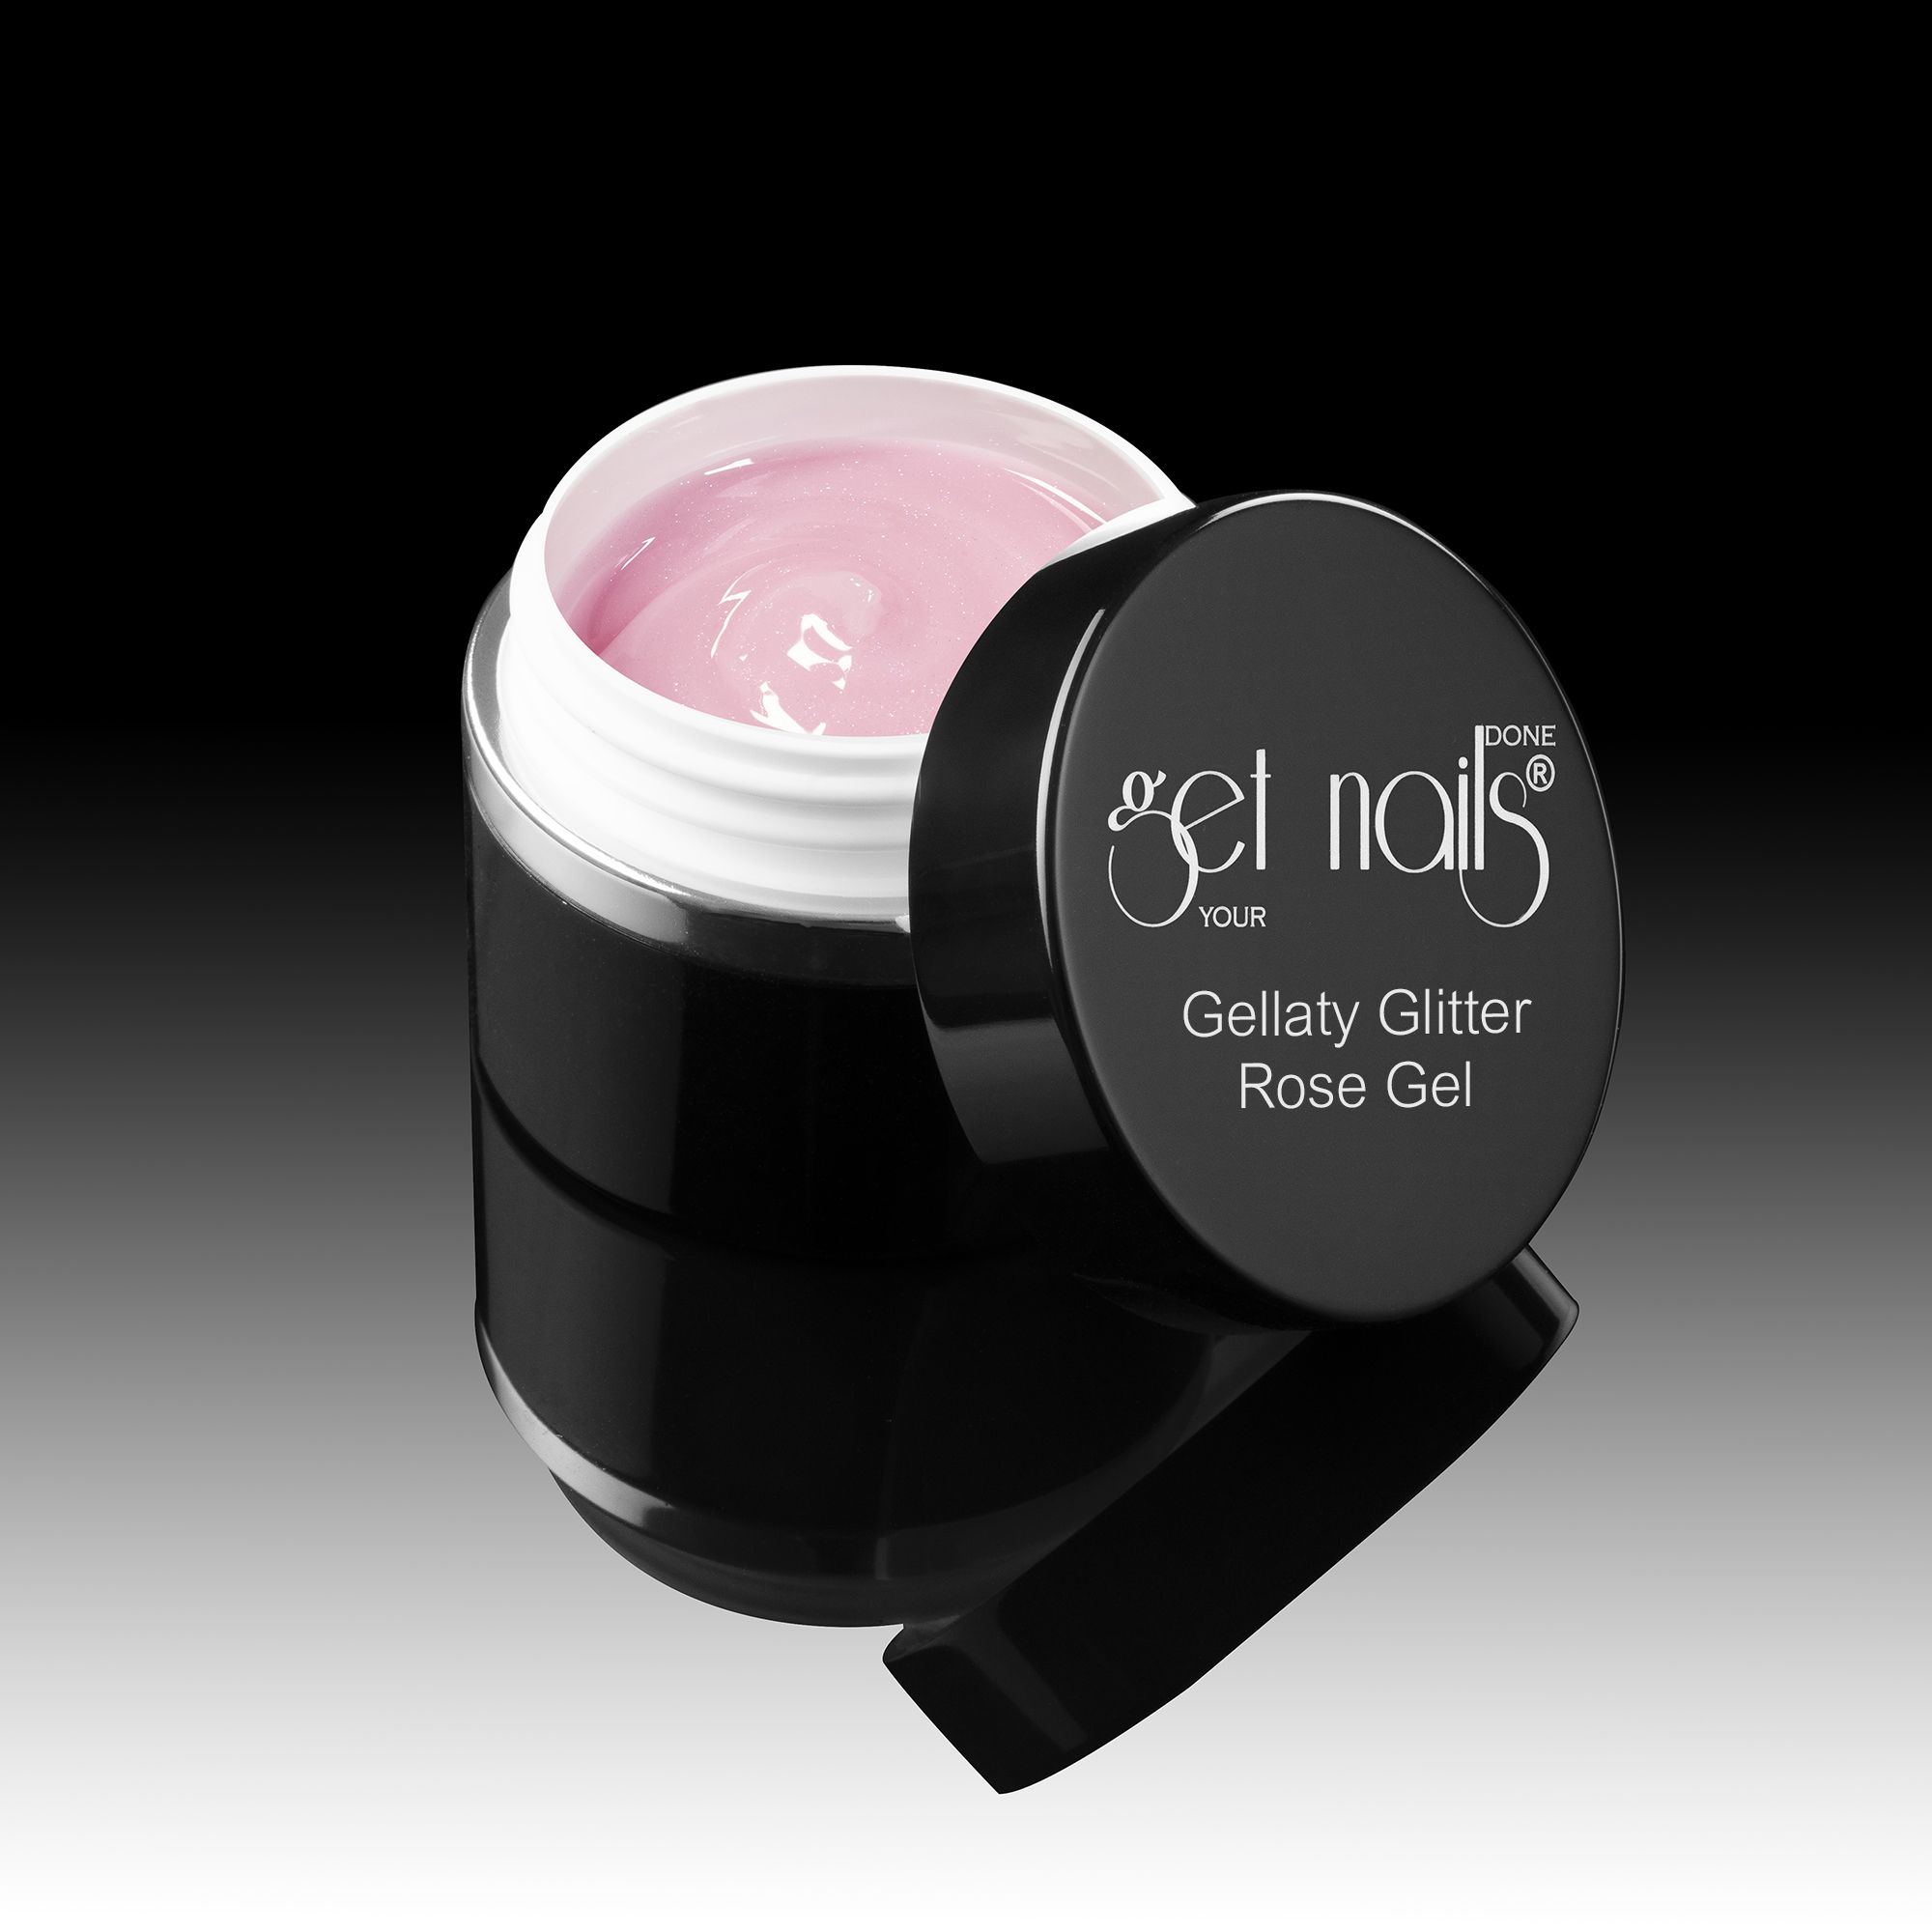 Get Nails Austria - Гель Gellaty Glitter Rose 50g